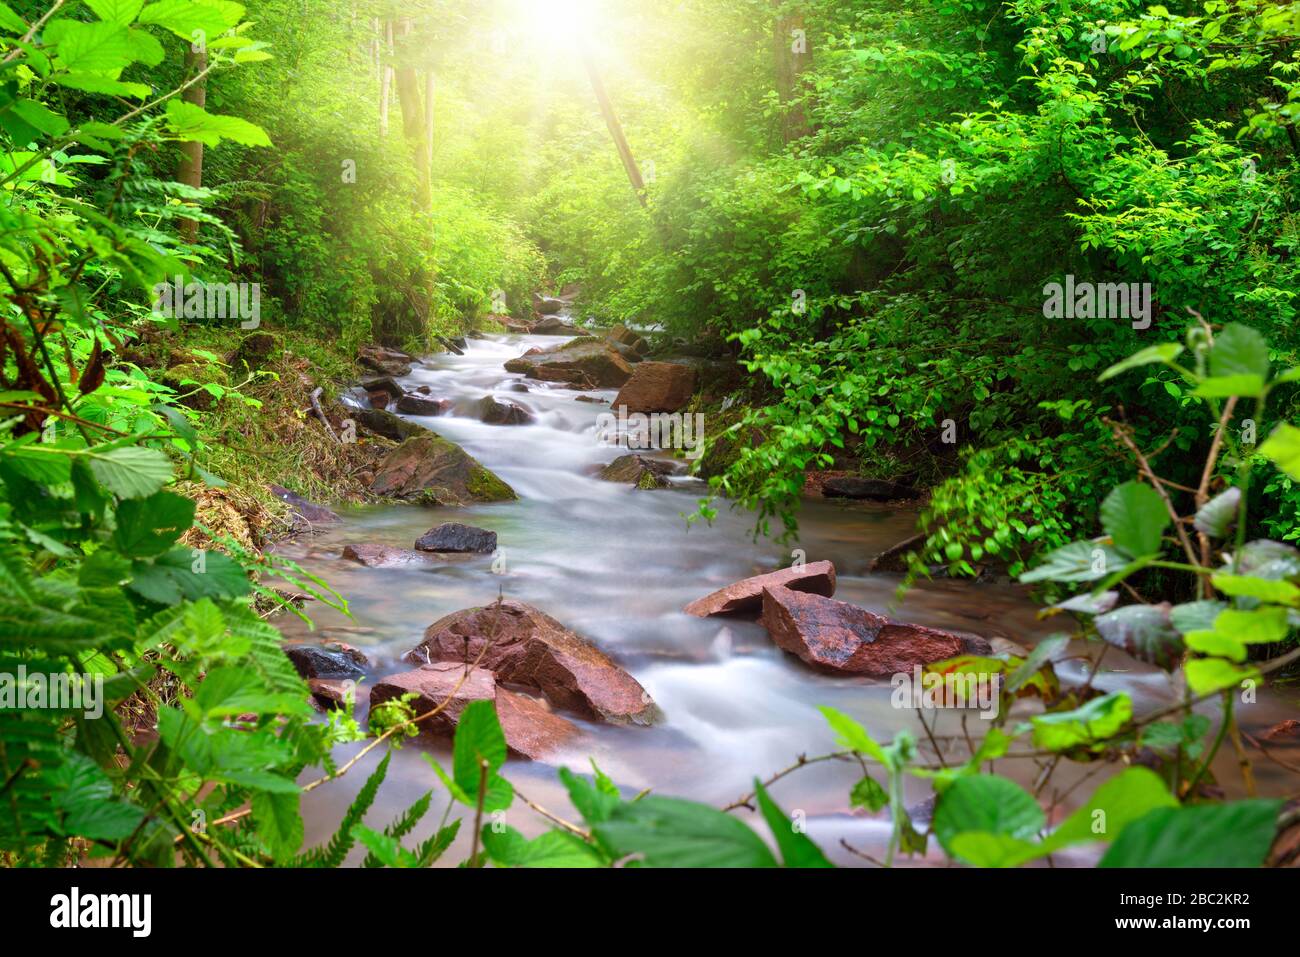 Schöner Bach fließt durch einen grünen Wald, umrahmt von lebendiger Laube, mit Sonnenstrahlen, die die Szene von oben beleuchten Stockfoto